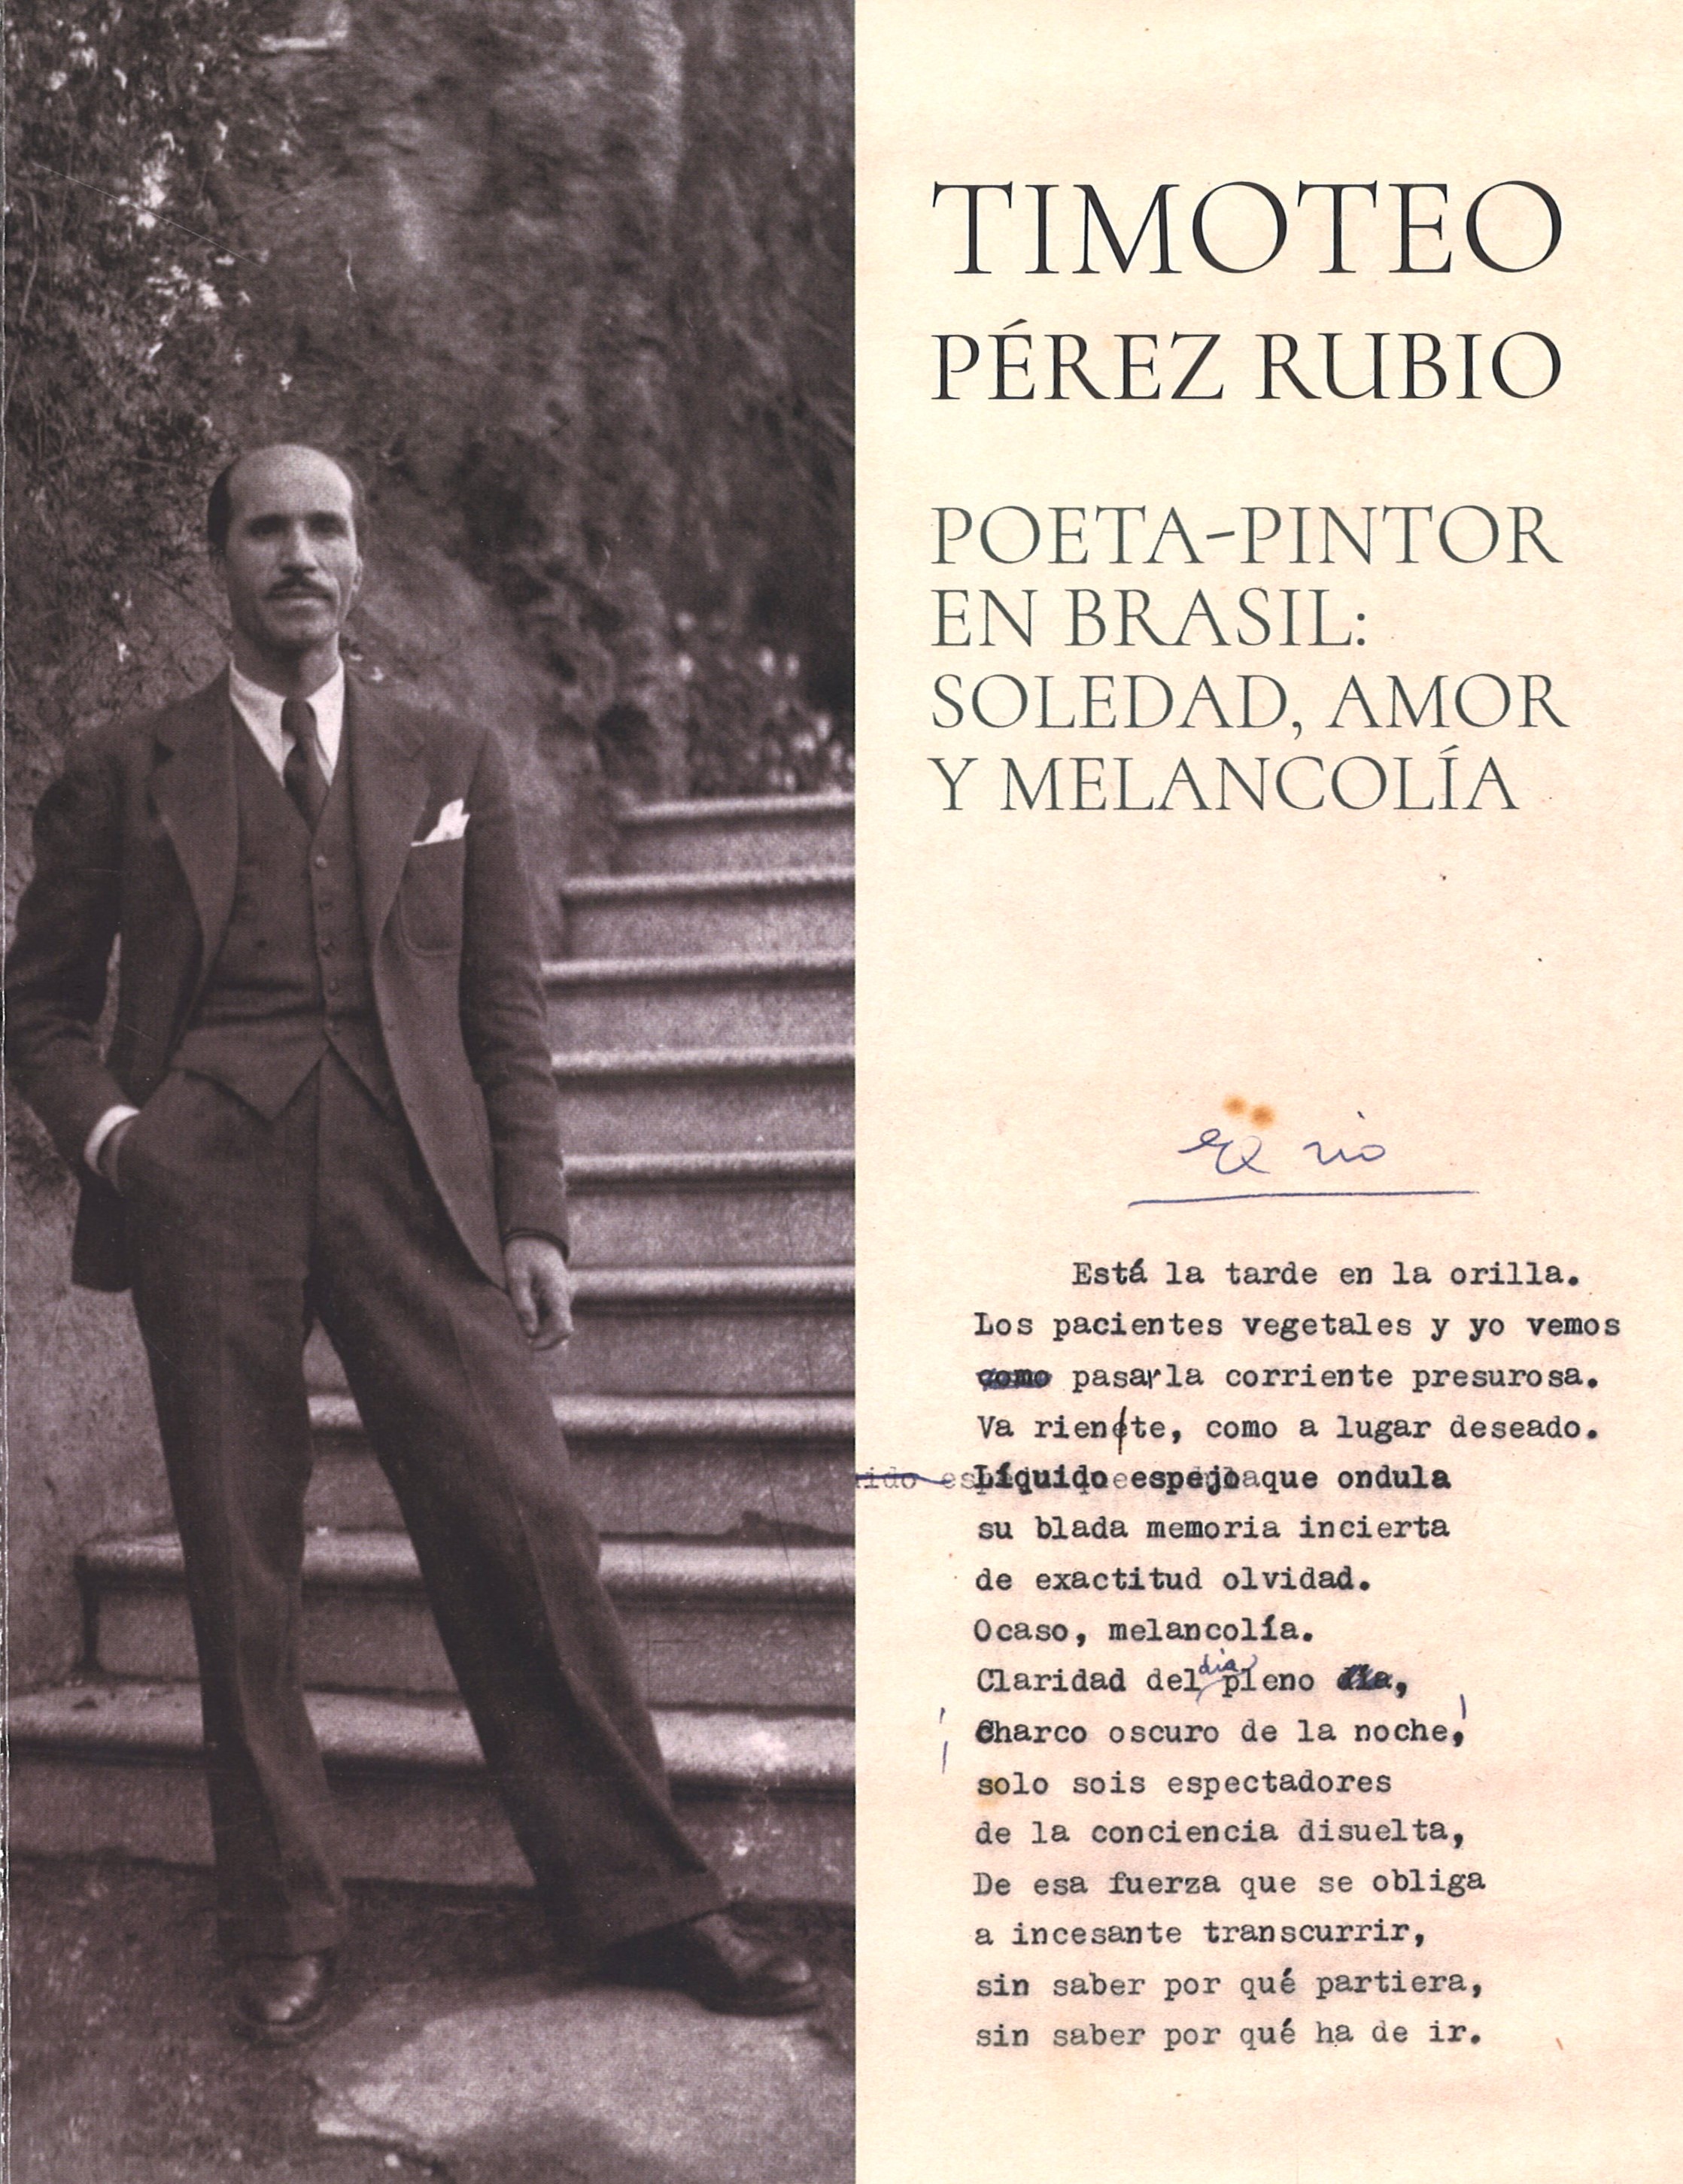 Timoteo Pérez Rubio